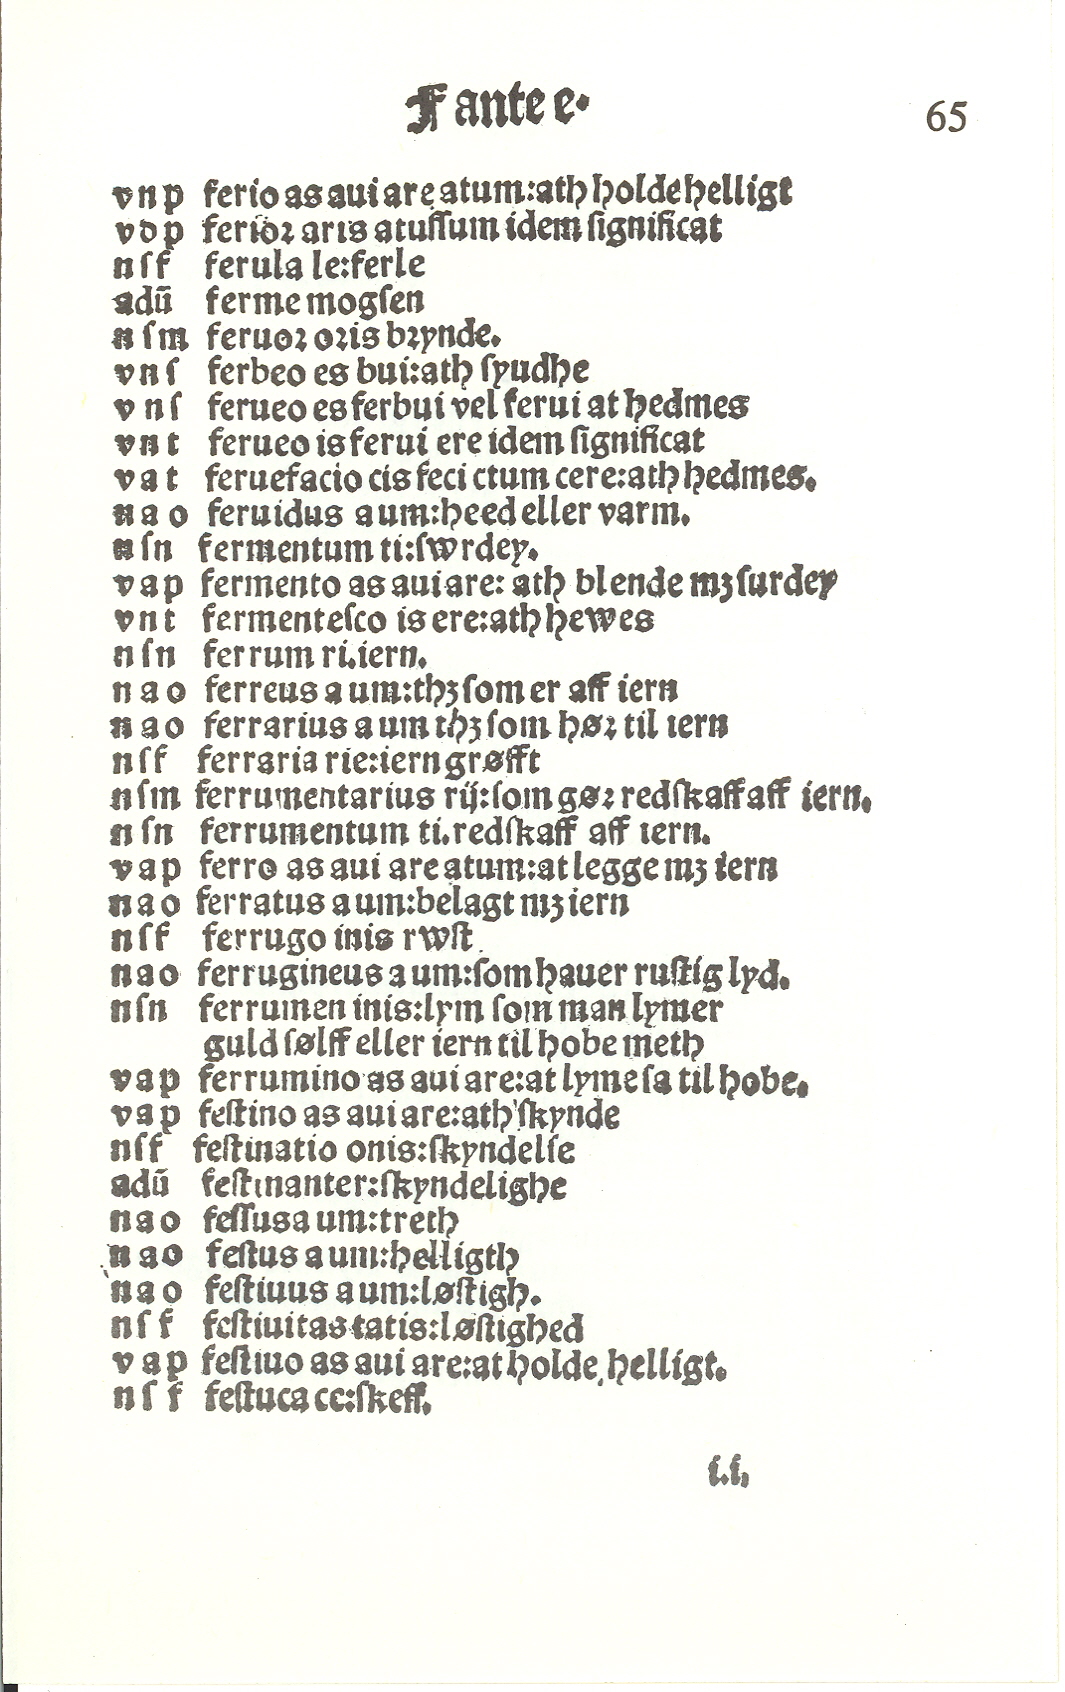 Pedersen 1510, Side: 127